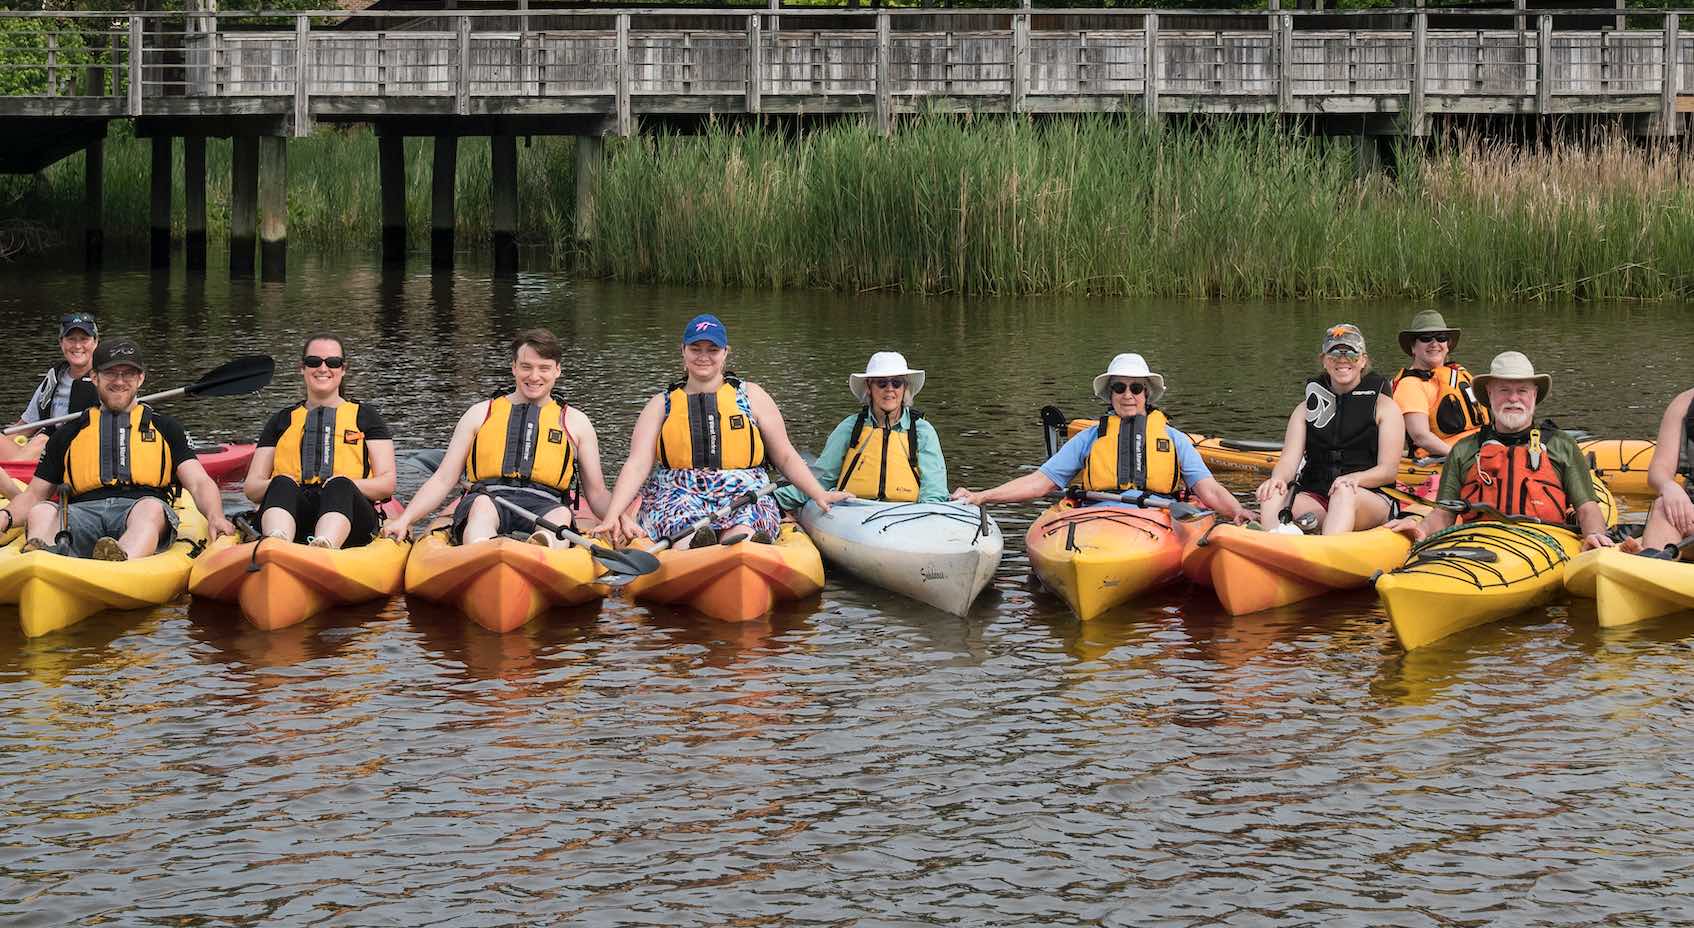 Alumni gathered for a kayak tour